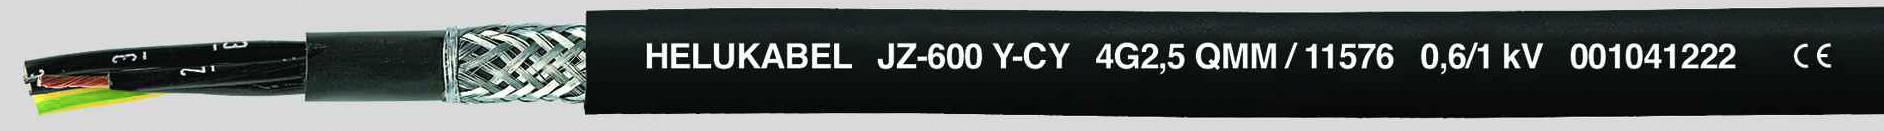 HELUKABEL JZ-600-Y-CY Steuerleitung 7 G 0.75 mm² Schwarz 11494-500 500 m